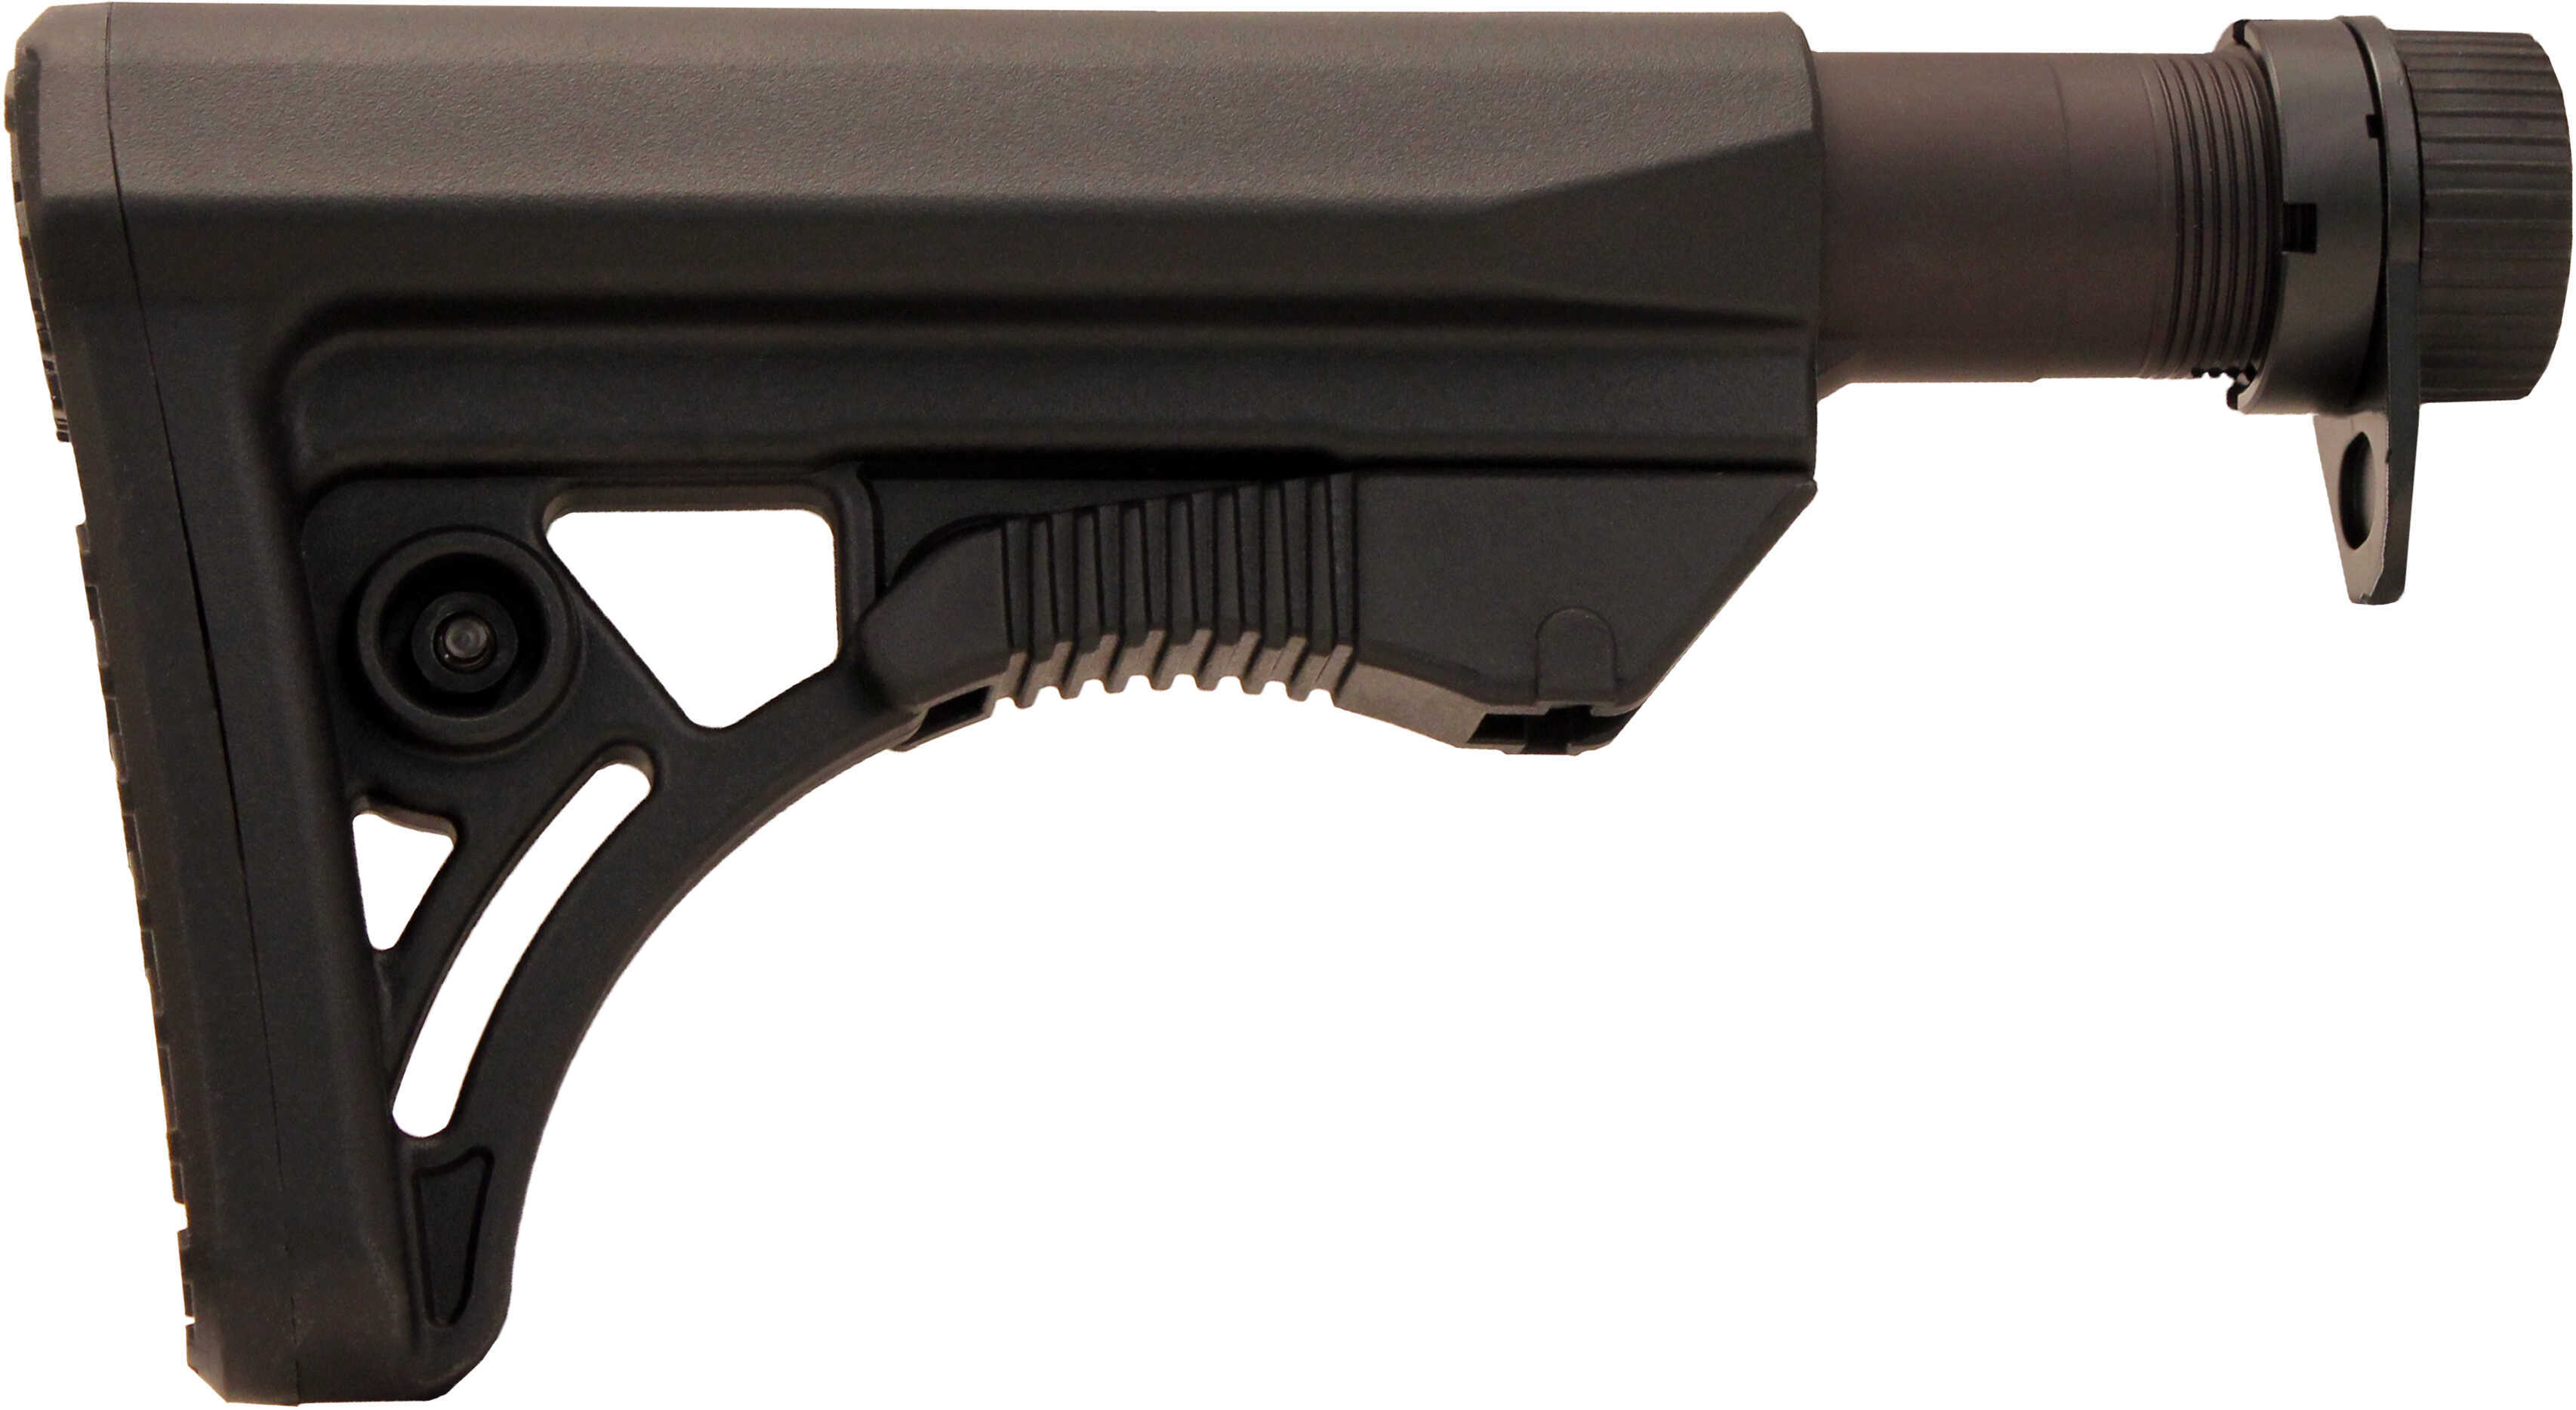 Leapers UTG RBUS3Bm Mil-Spec S3 AR15/M16 Rifle Buttstock Kit Aluminum/Polymer Black